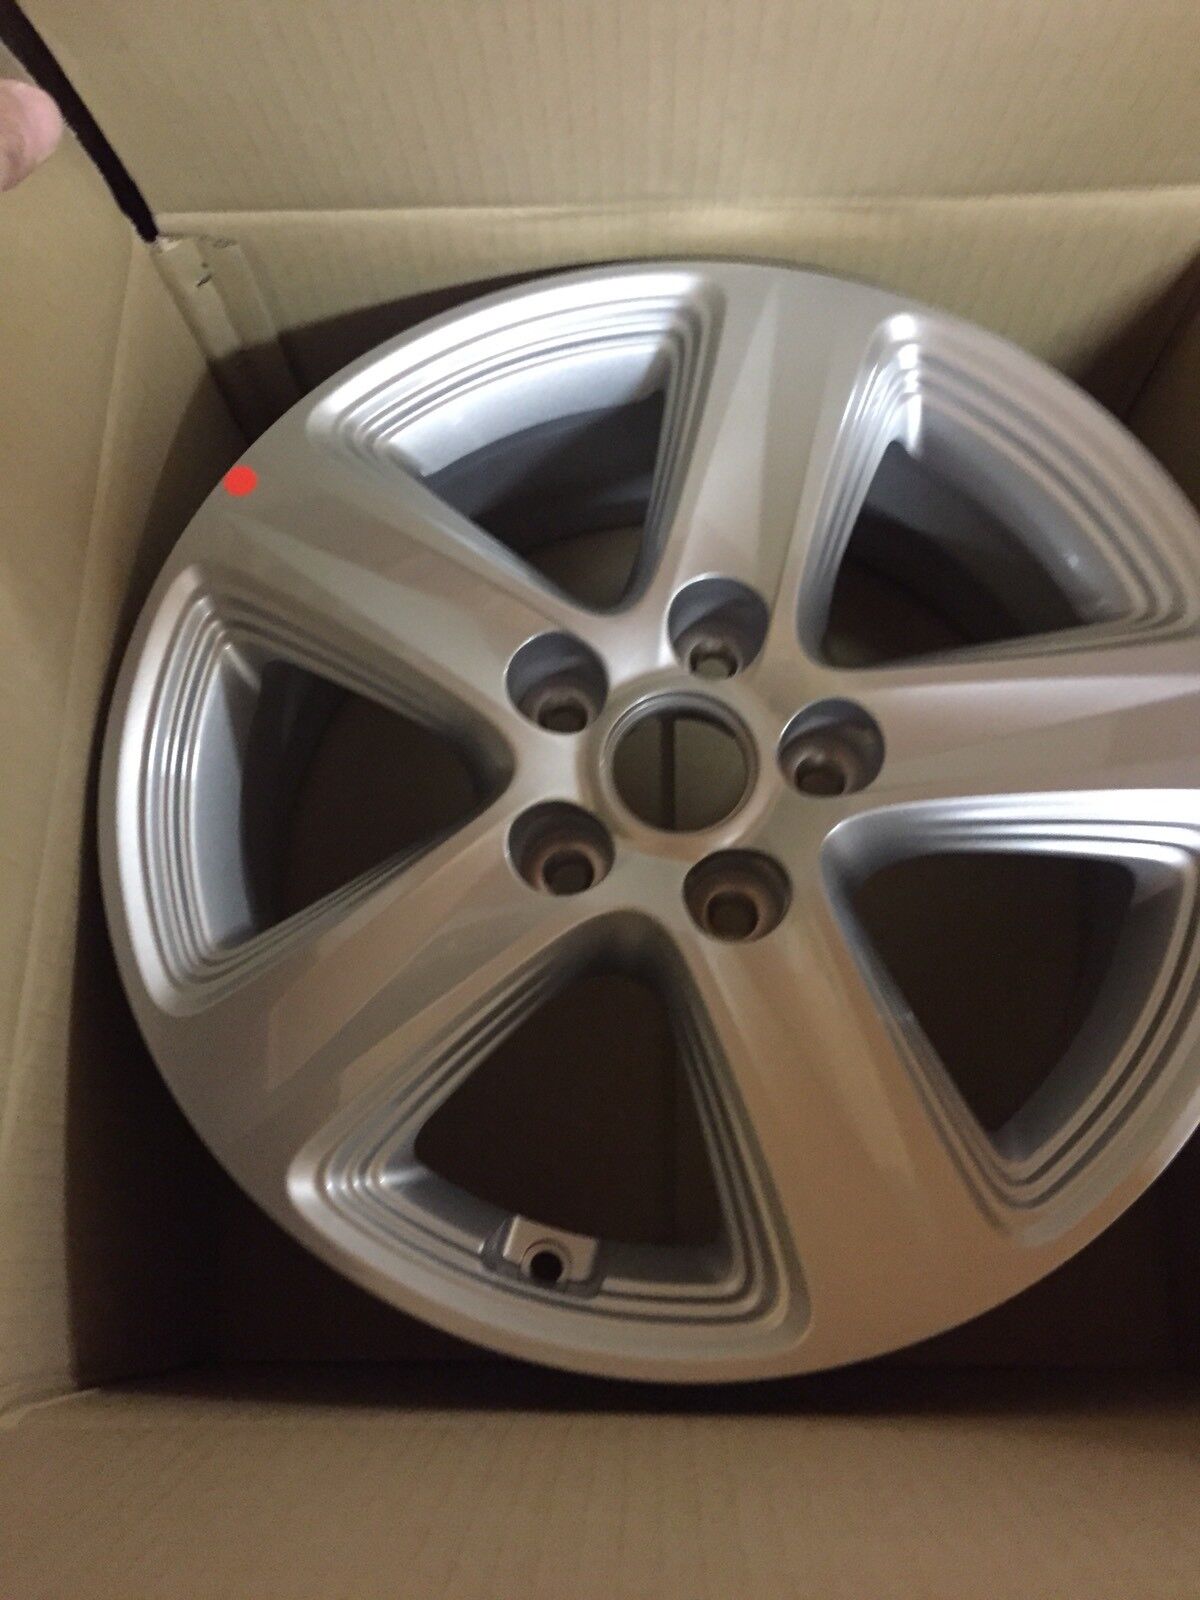 New 16” Kia Wheel Fits Sportage Tucson Sonata Forte Elantra 52910-3w510